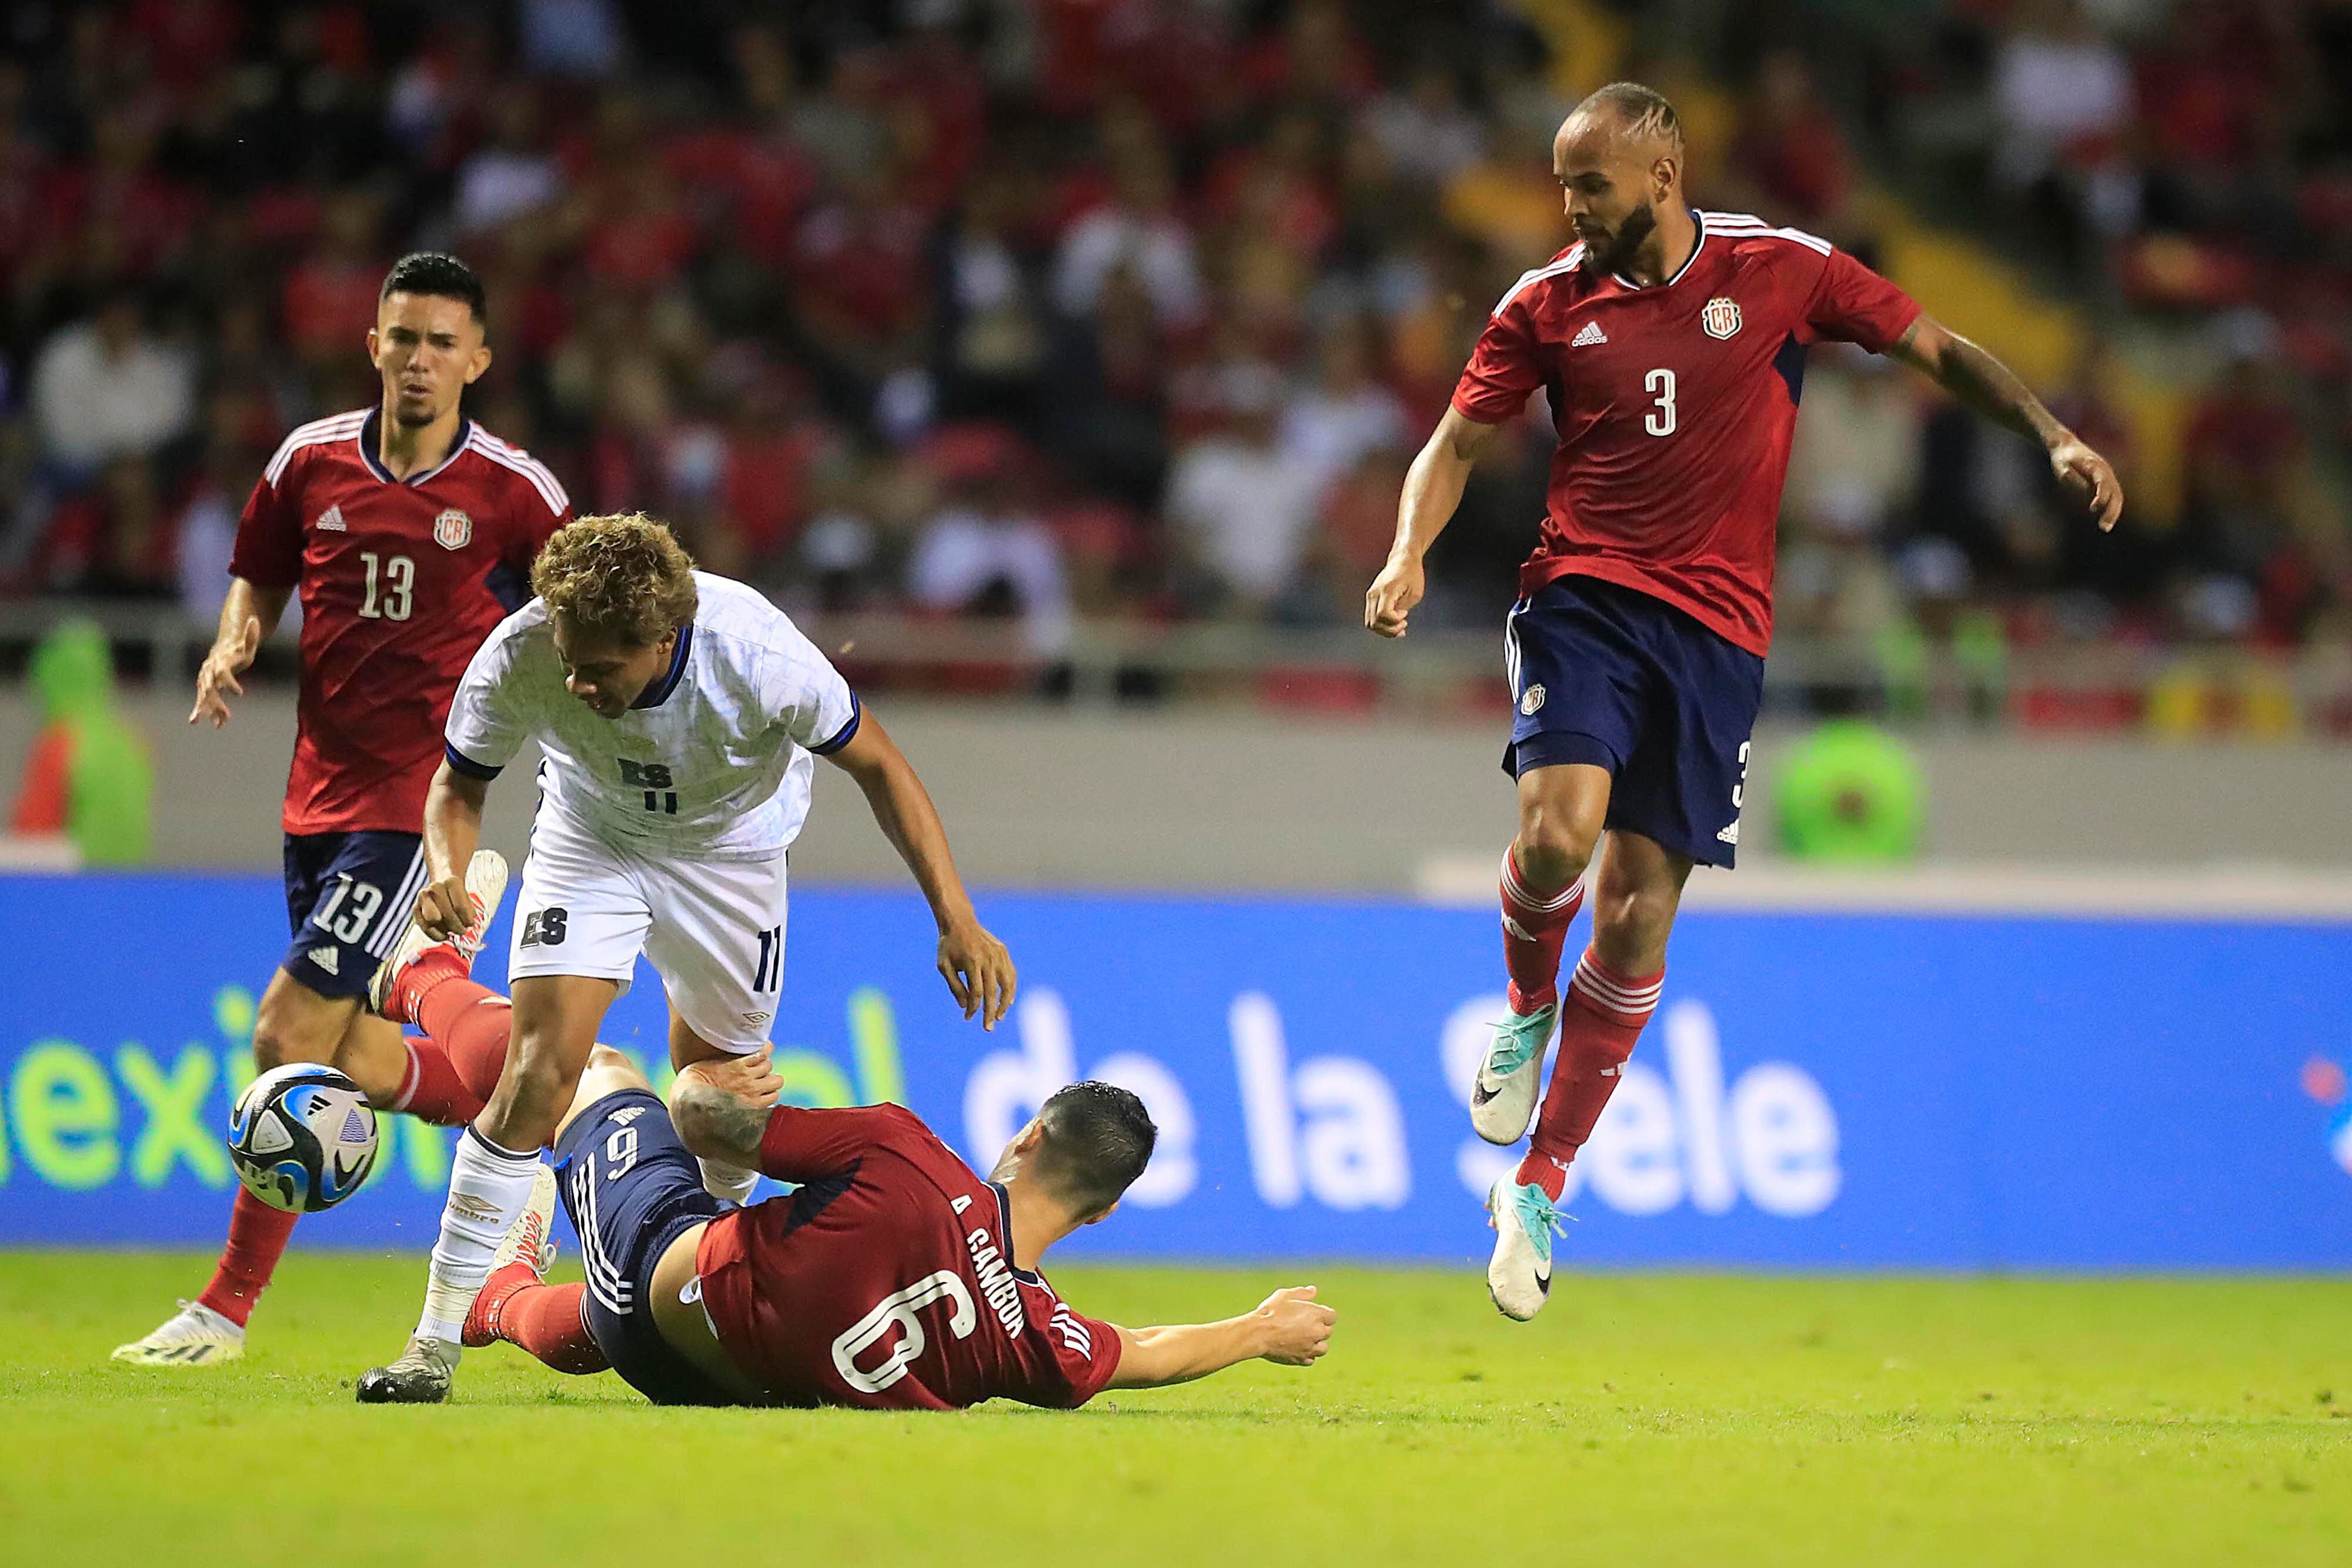 La Selección de Costa Rica enfrenta en amistoso a Uruguay el 31 de mayo y en la eliminatoria mundialista se mide el 6 de junio a San Cristóbal y Nieves, ambos juegos en el Estadio Nacional.